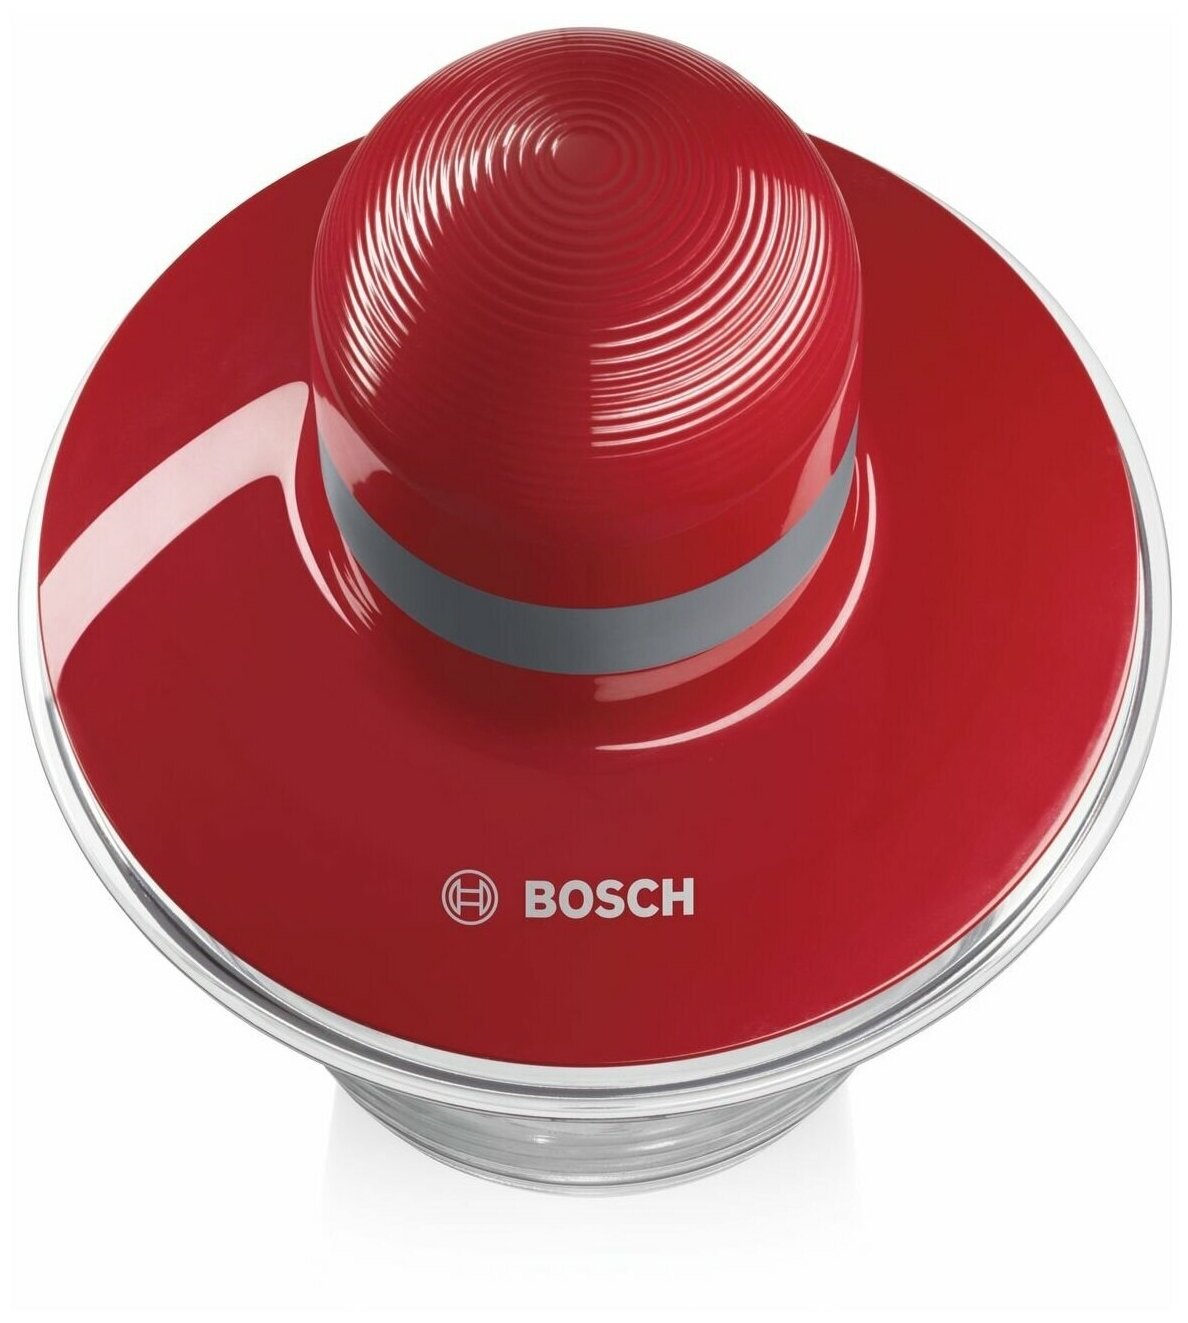 Измельчитель Bosch MMR08R2 красный